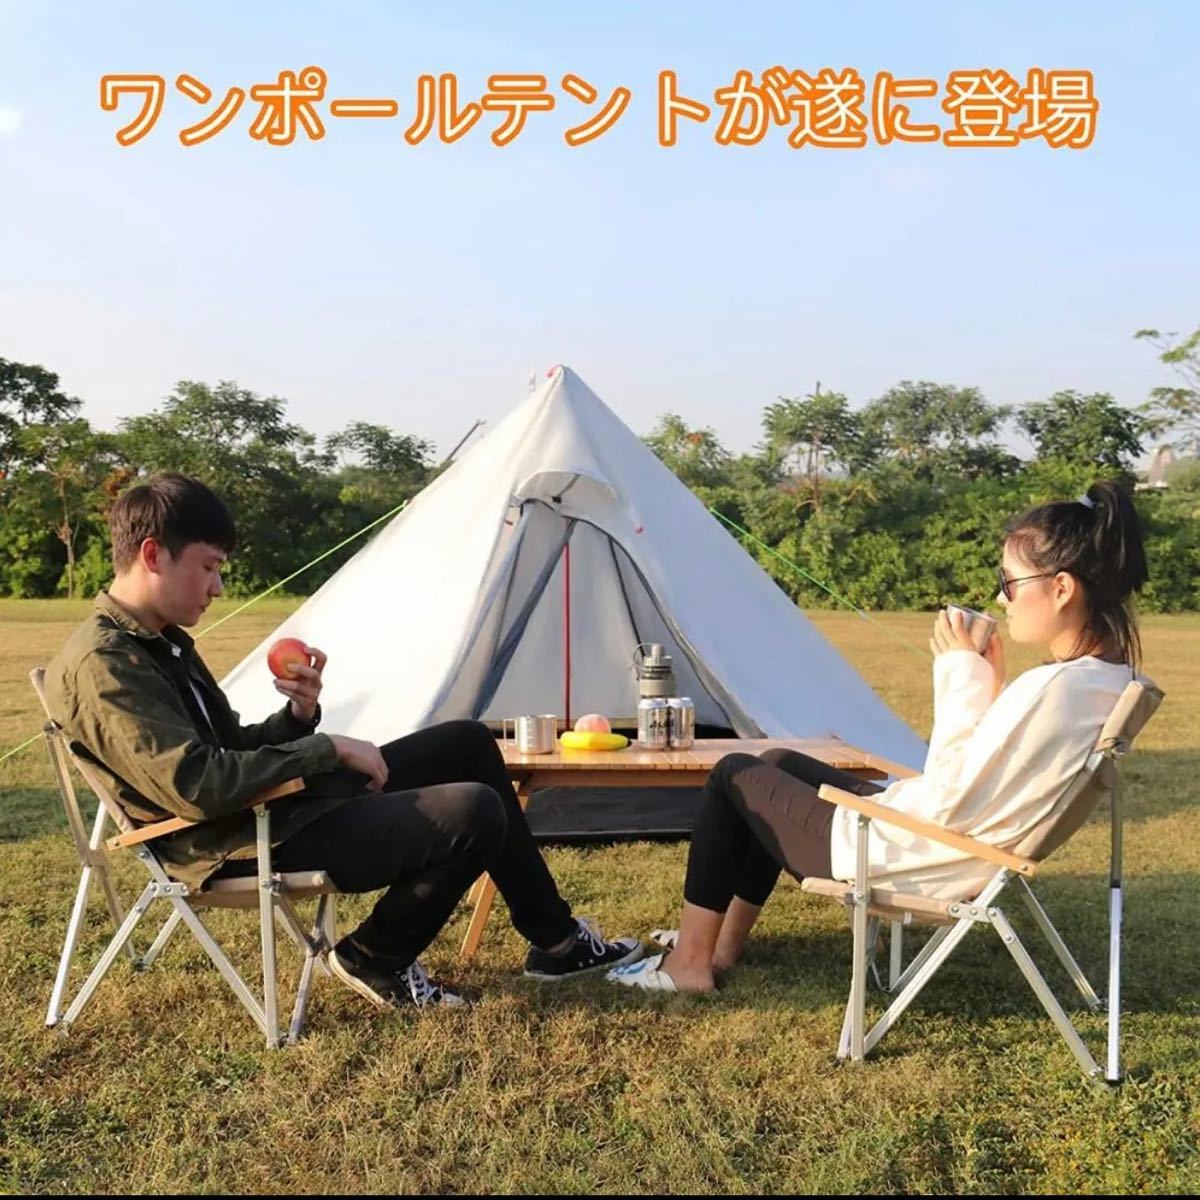 【新品】RANMODO テント ワンポールテント 4人用 パネル式